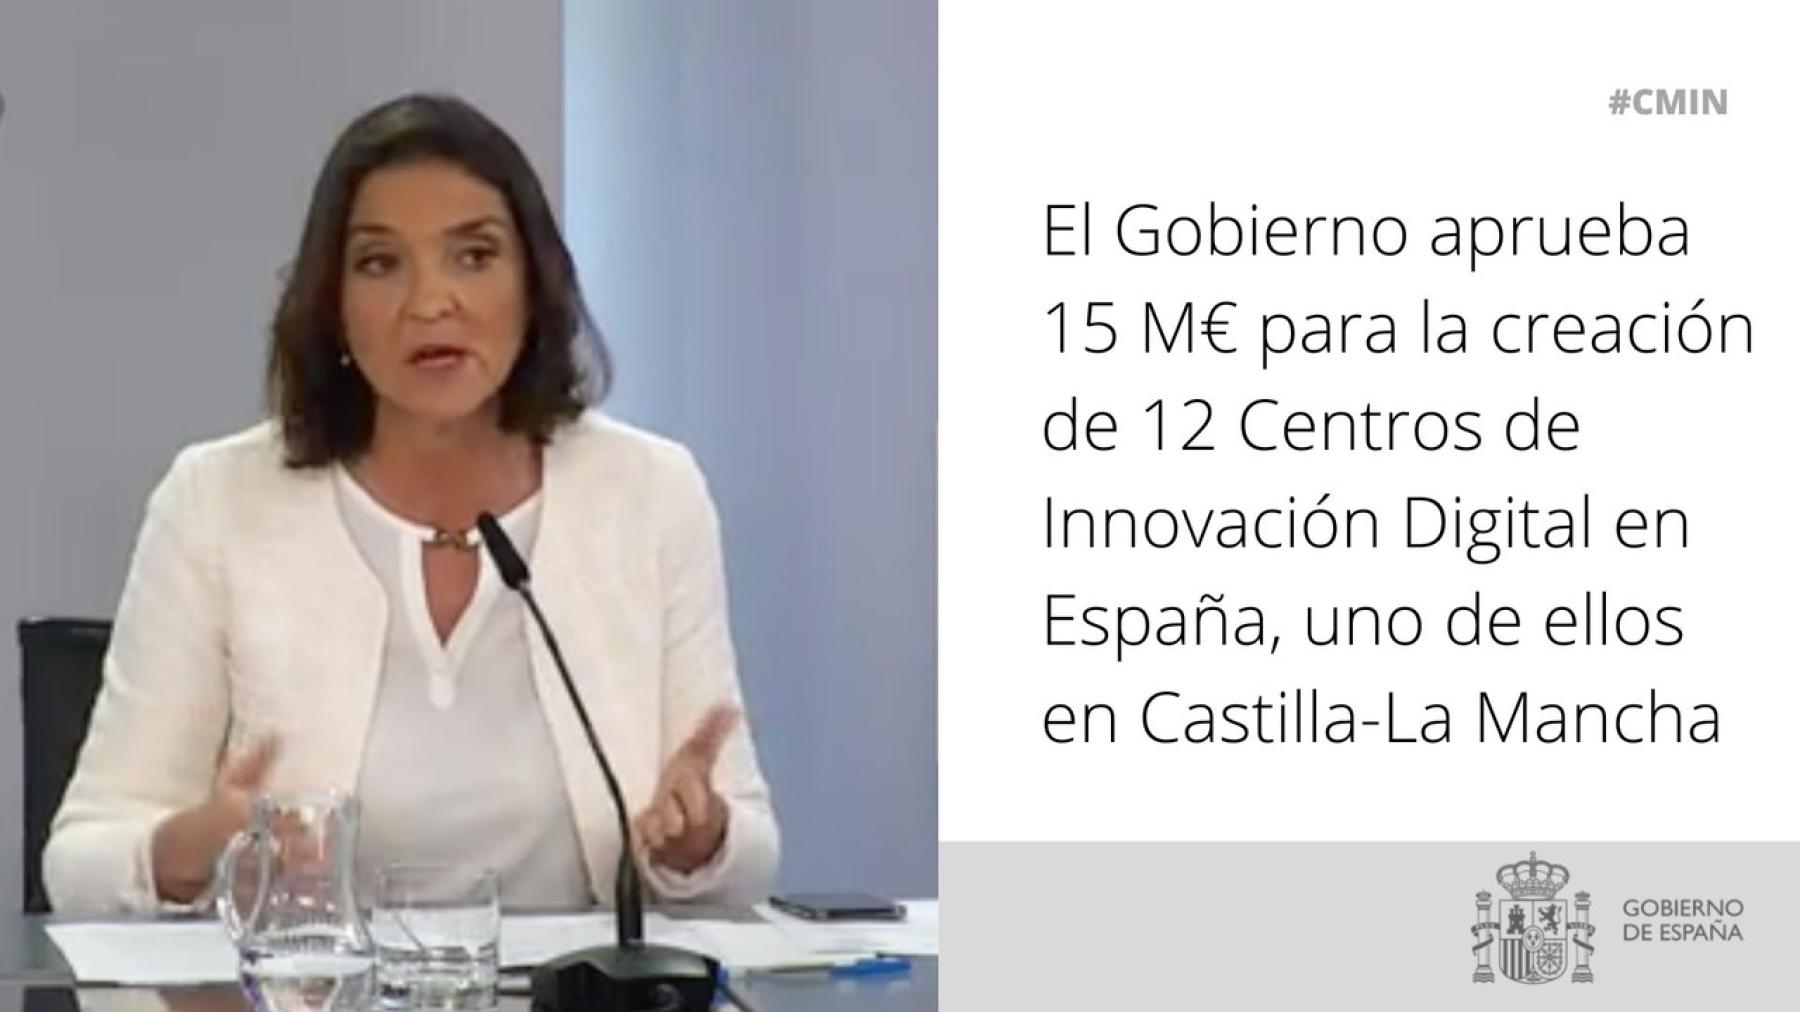 El Gobierno aprueba 15 M€ para la creación de 12 Centros de Innovación Digital en España, uno de ellos en Castilla-La Mancha